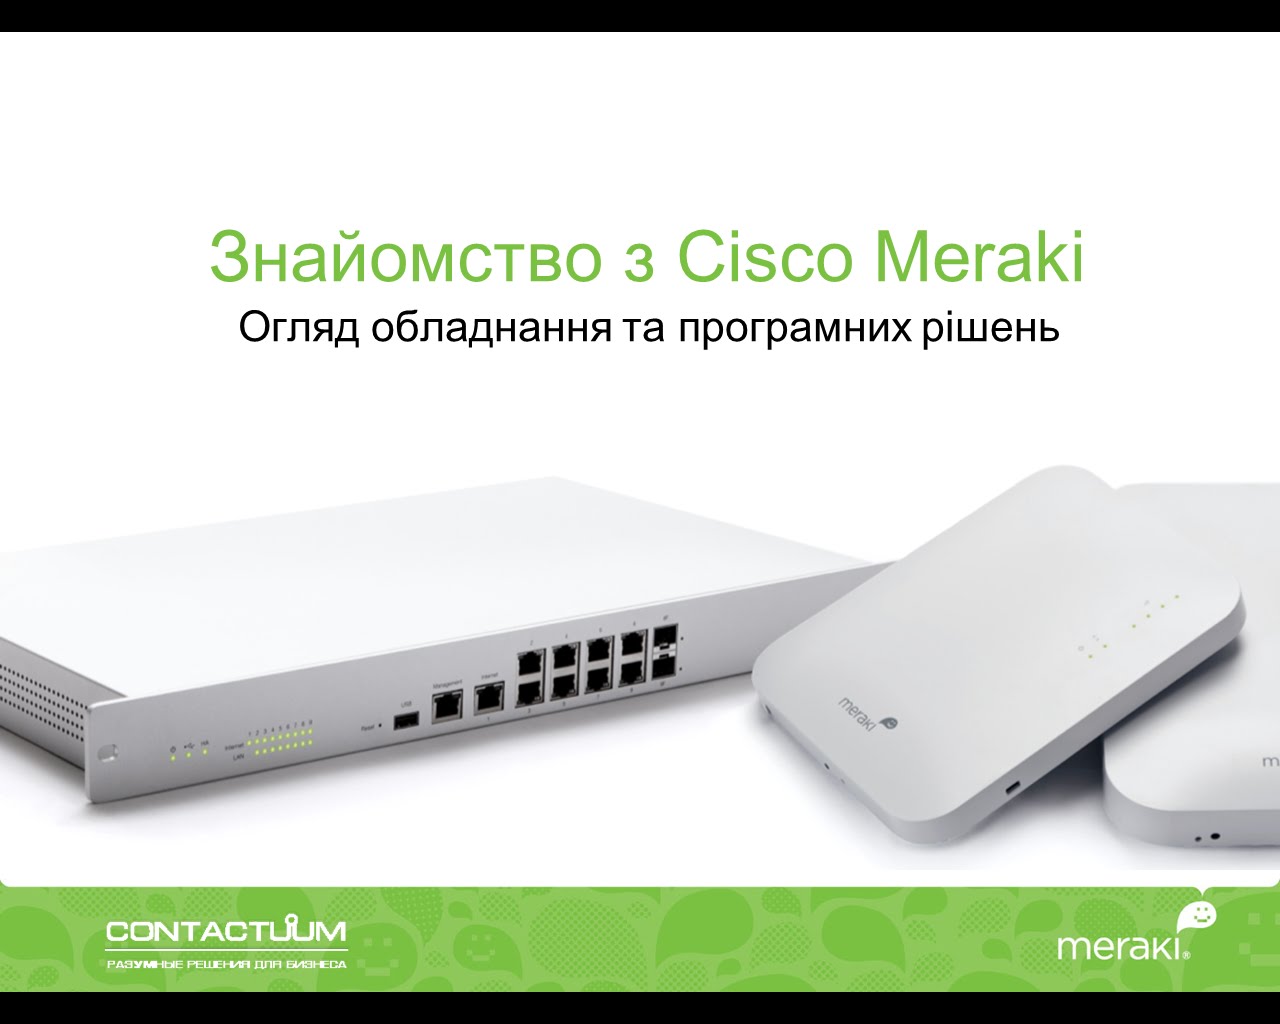 Cisco Meraki Webinar 18.11.2014: Знайомство з Cisco Meraki